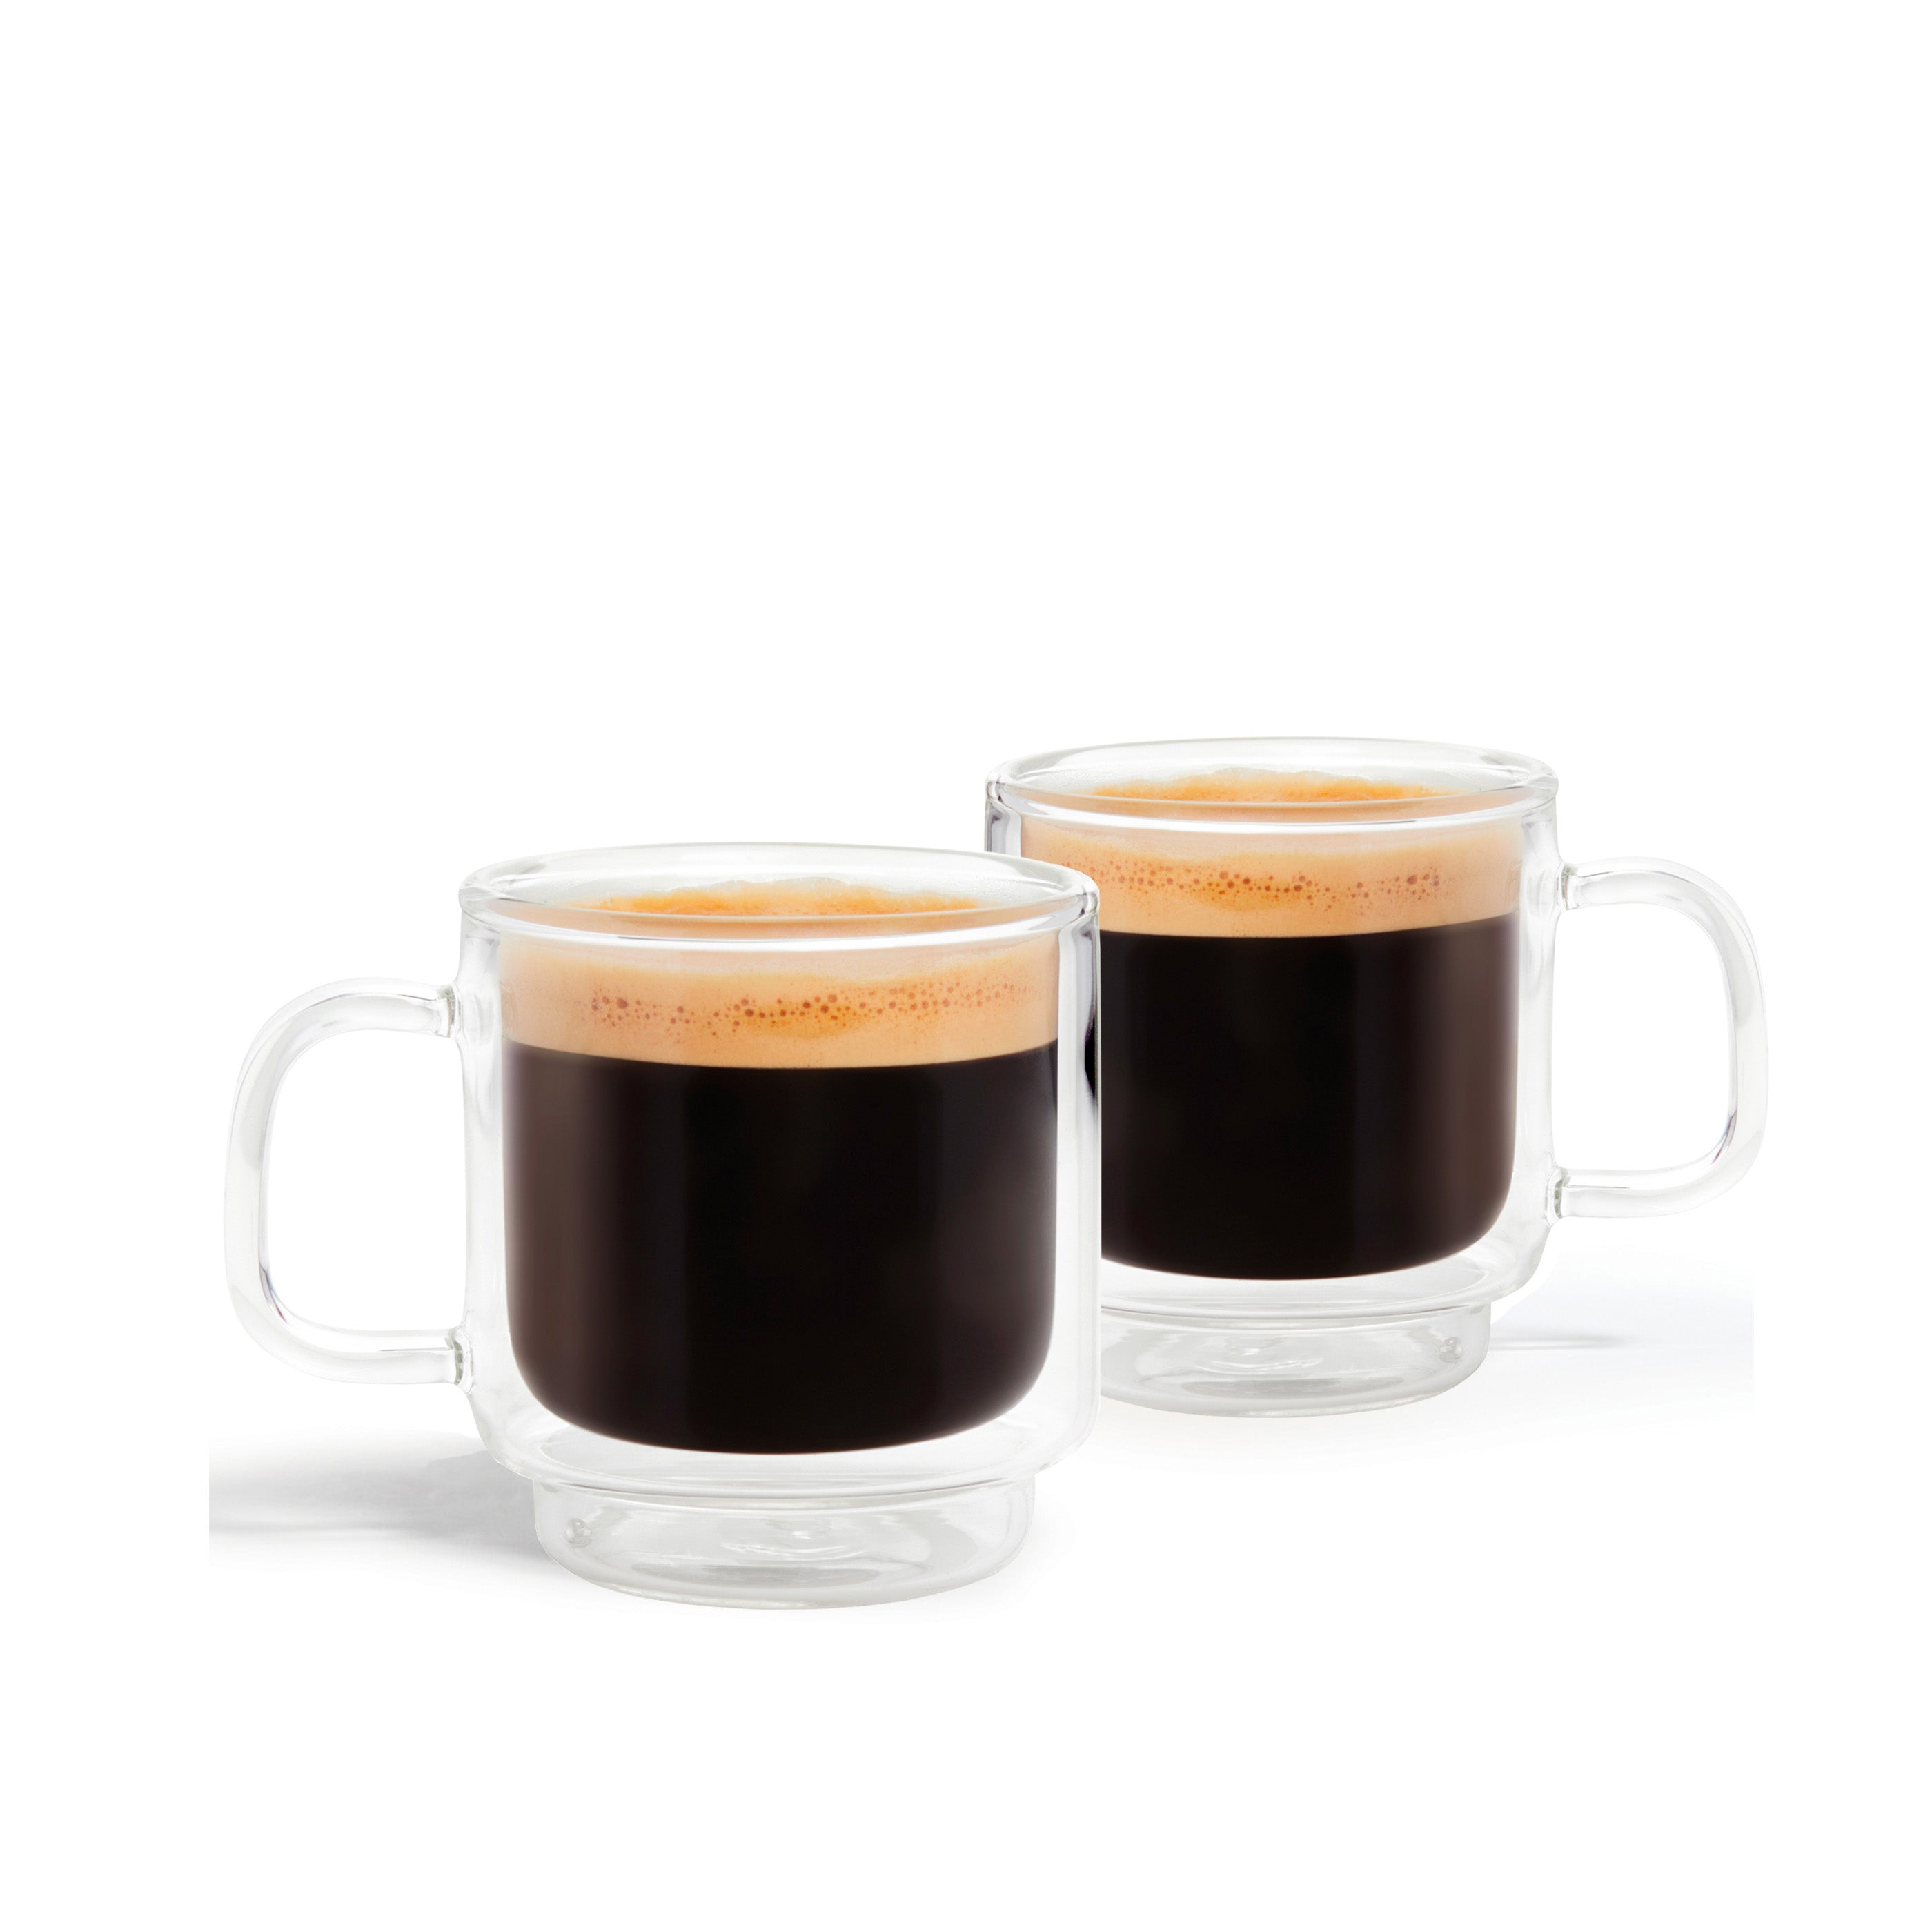 Réglez 2 tasses de pause-café expresso — Simple Day